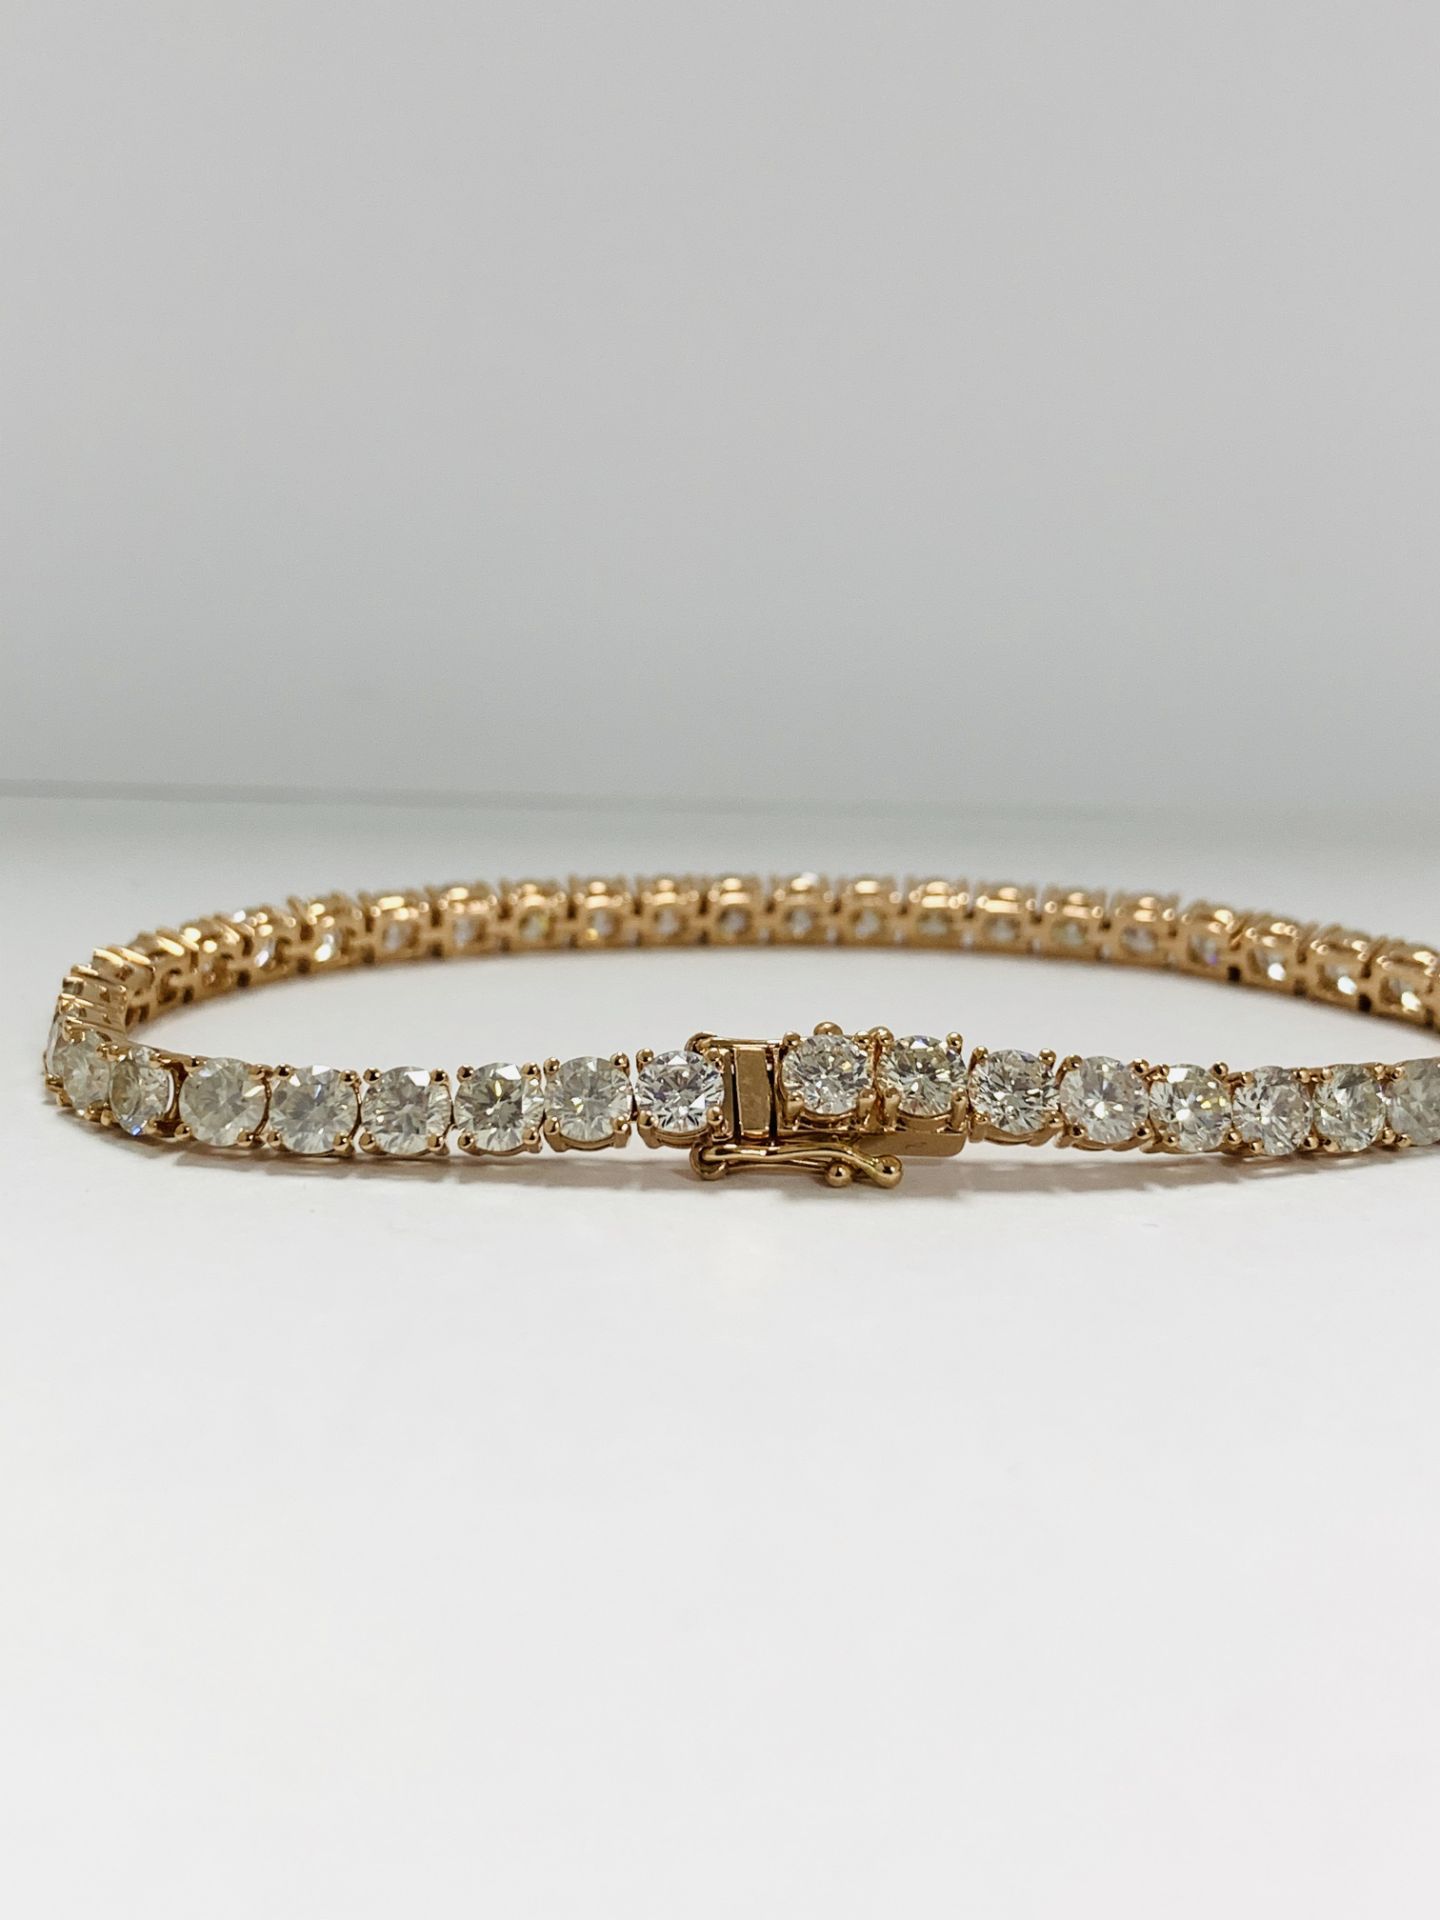 14K Rose Gold Bracelet - Image 5 of 21